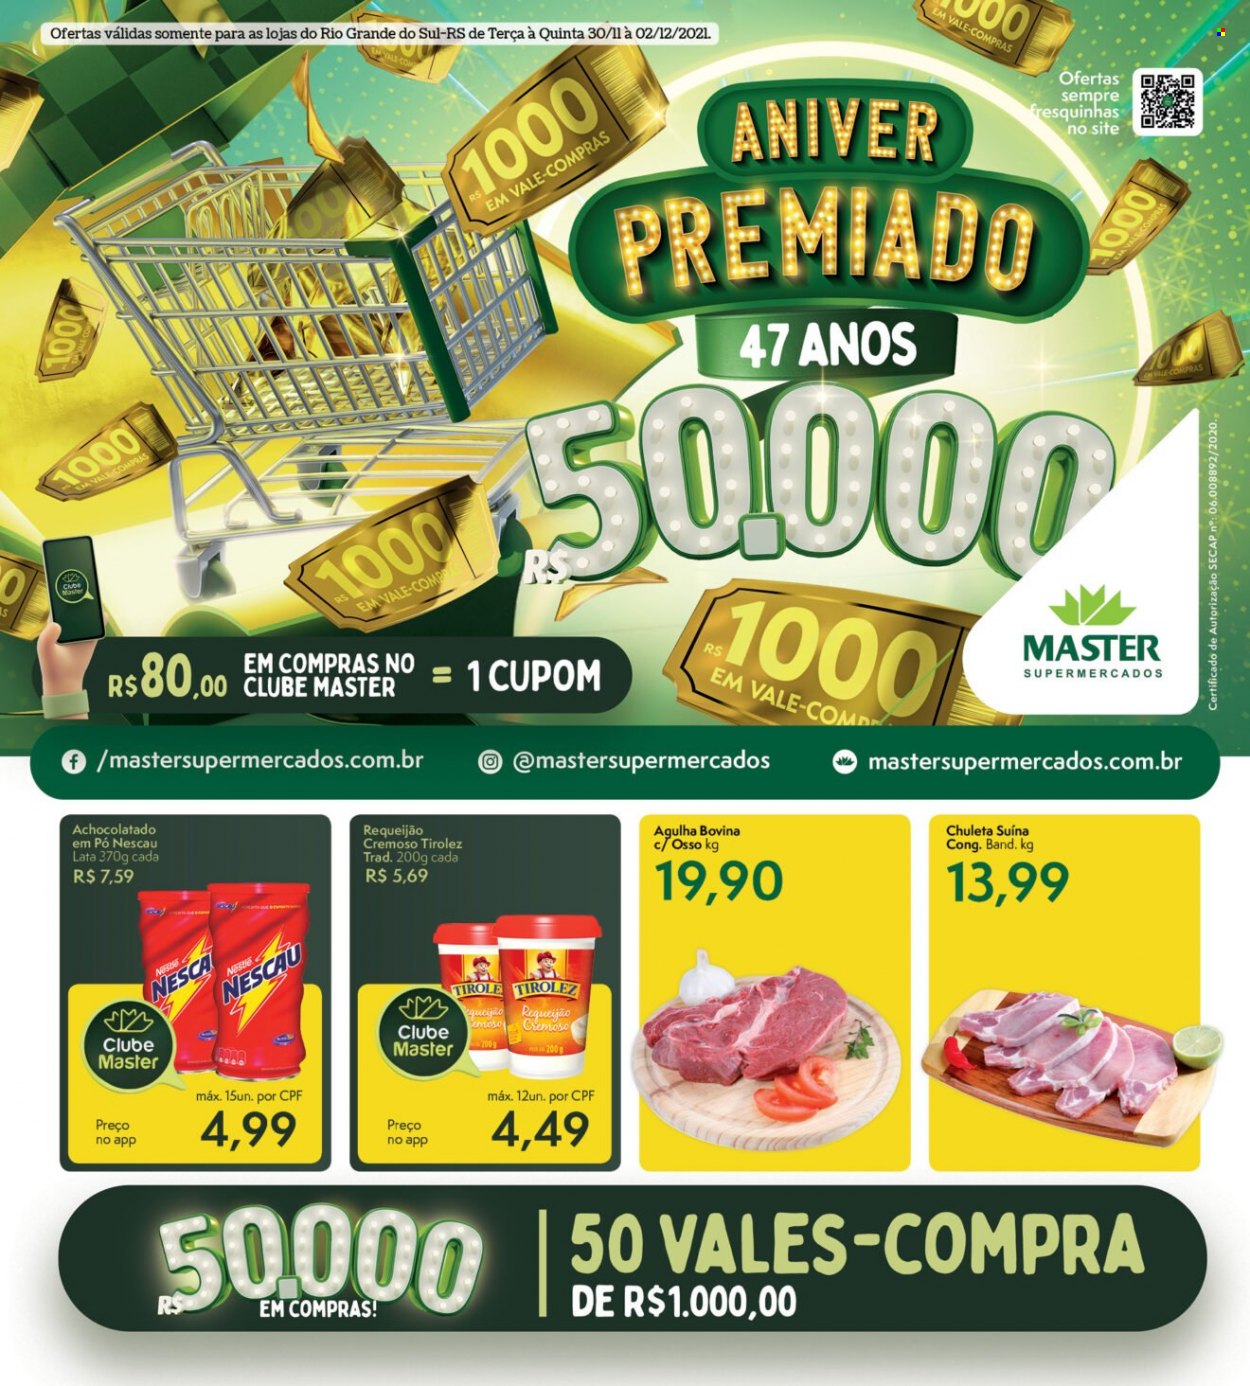 thumbnail - Folheto Master Supermercados - 30/11/2021 - 02/12/2021 - Produtos em promoção - requeijão, achocolatado, Nescau, achocolatado em pó. Página 1.